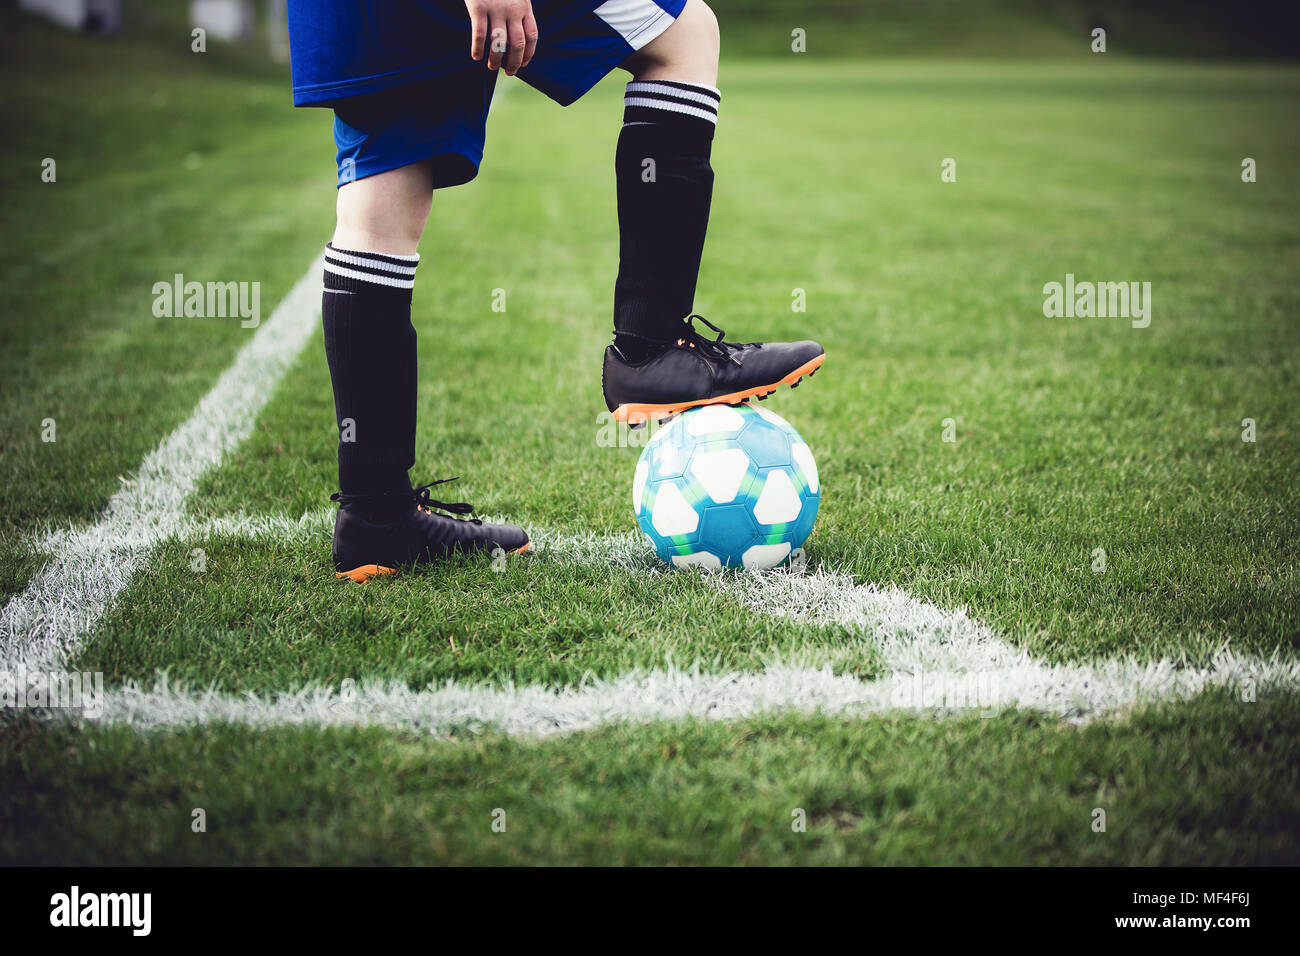 Kinder spielen Fußball auf lokaler Stadion draußen auf einer Rasenfläche.  Unteren geschossen, in der Nähe der Füße und Ball. Kinder spielen Fußball,  Lieblingssport, gr&ou Stockfotografie - Alamy